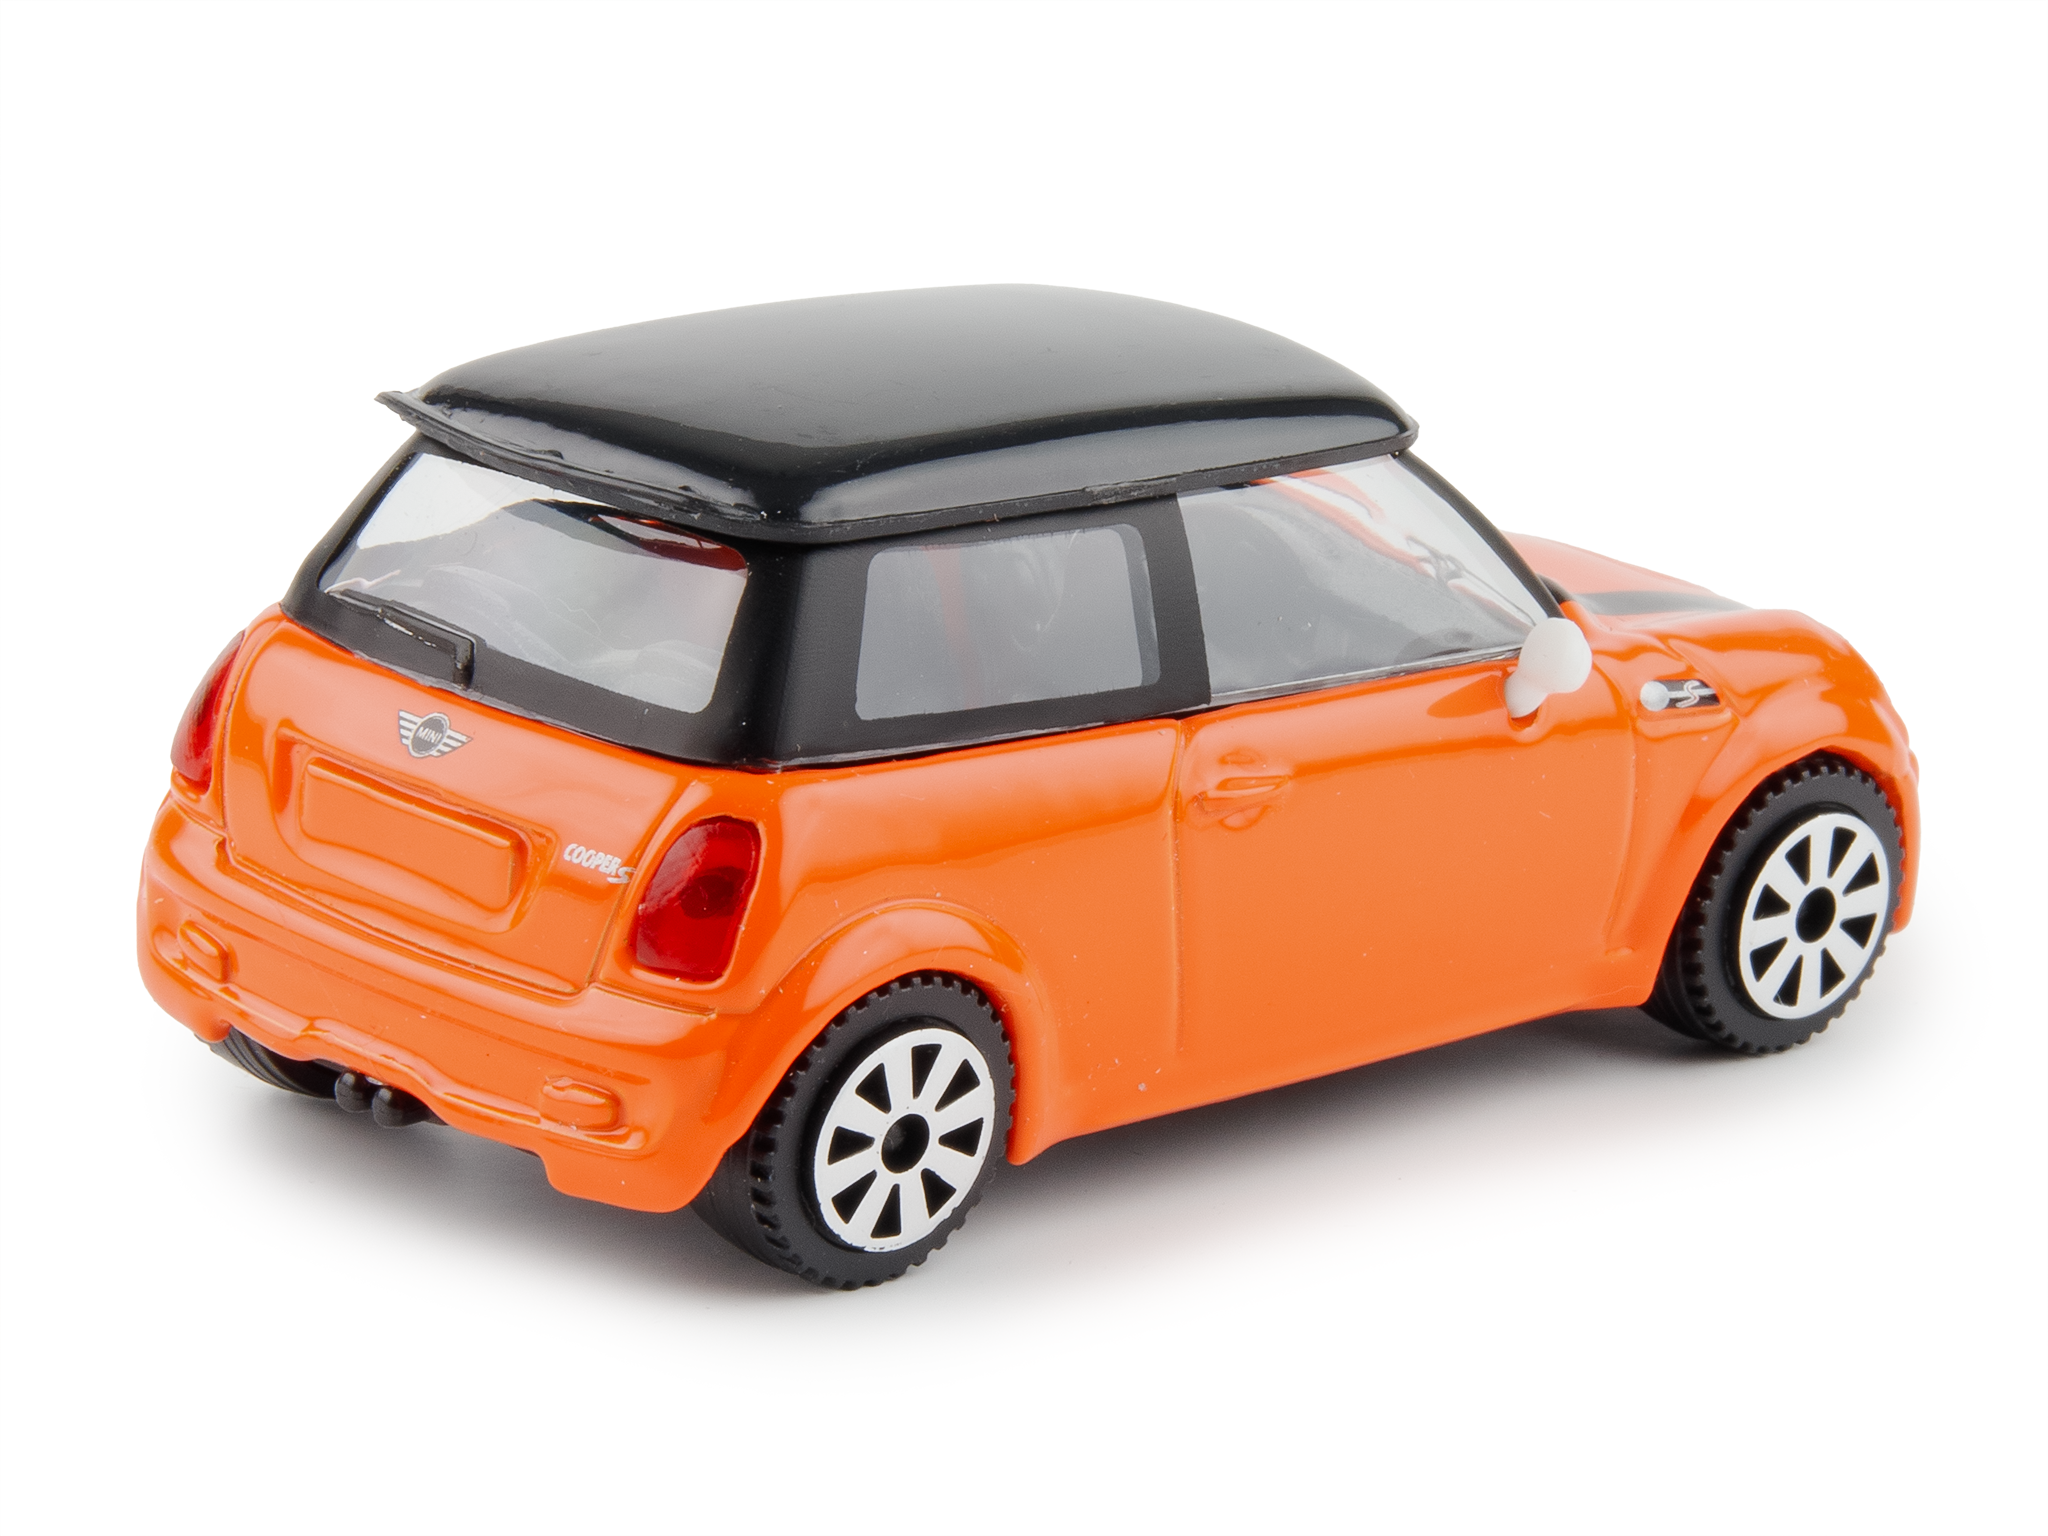 MINI Cooper S orange/black - 1:43 Scale Diecast Toy Car